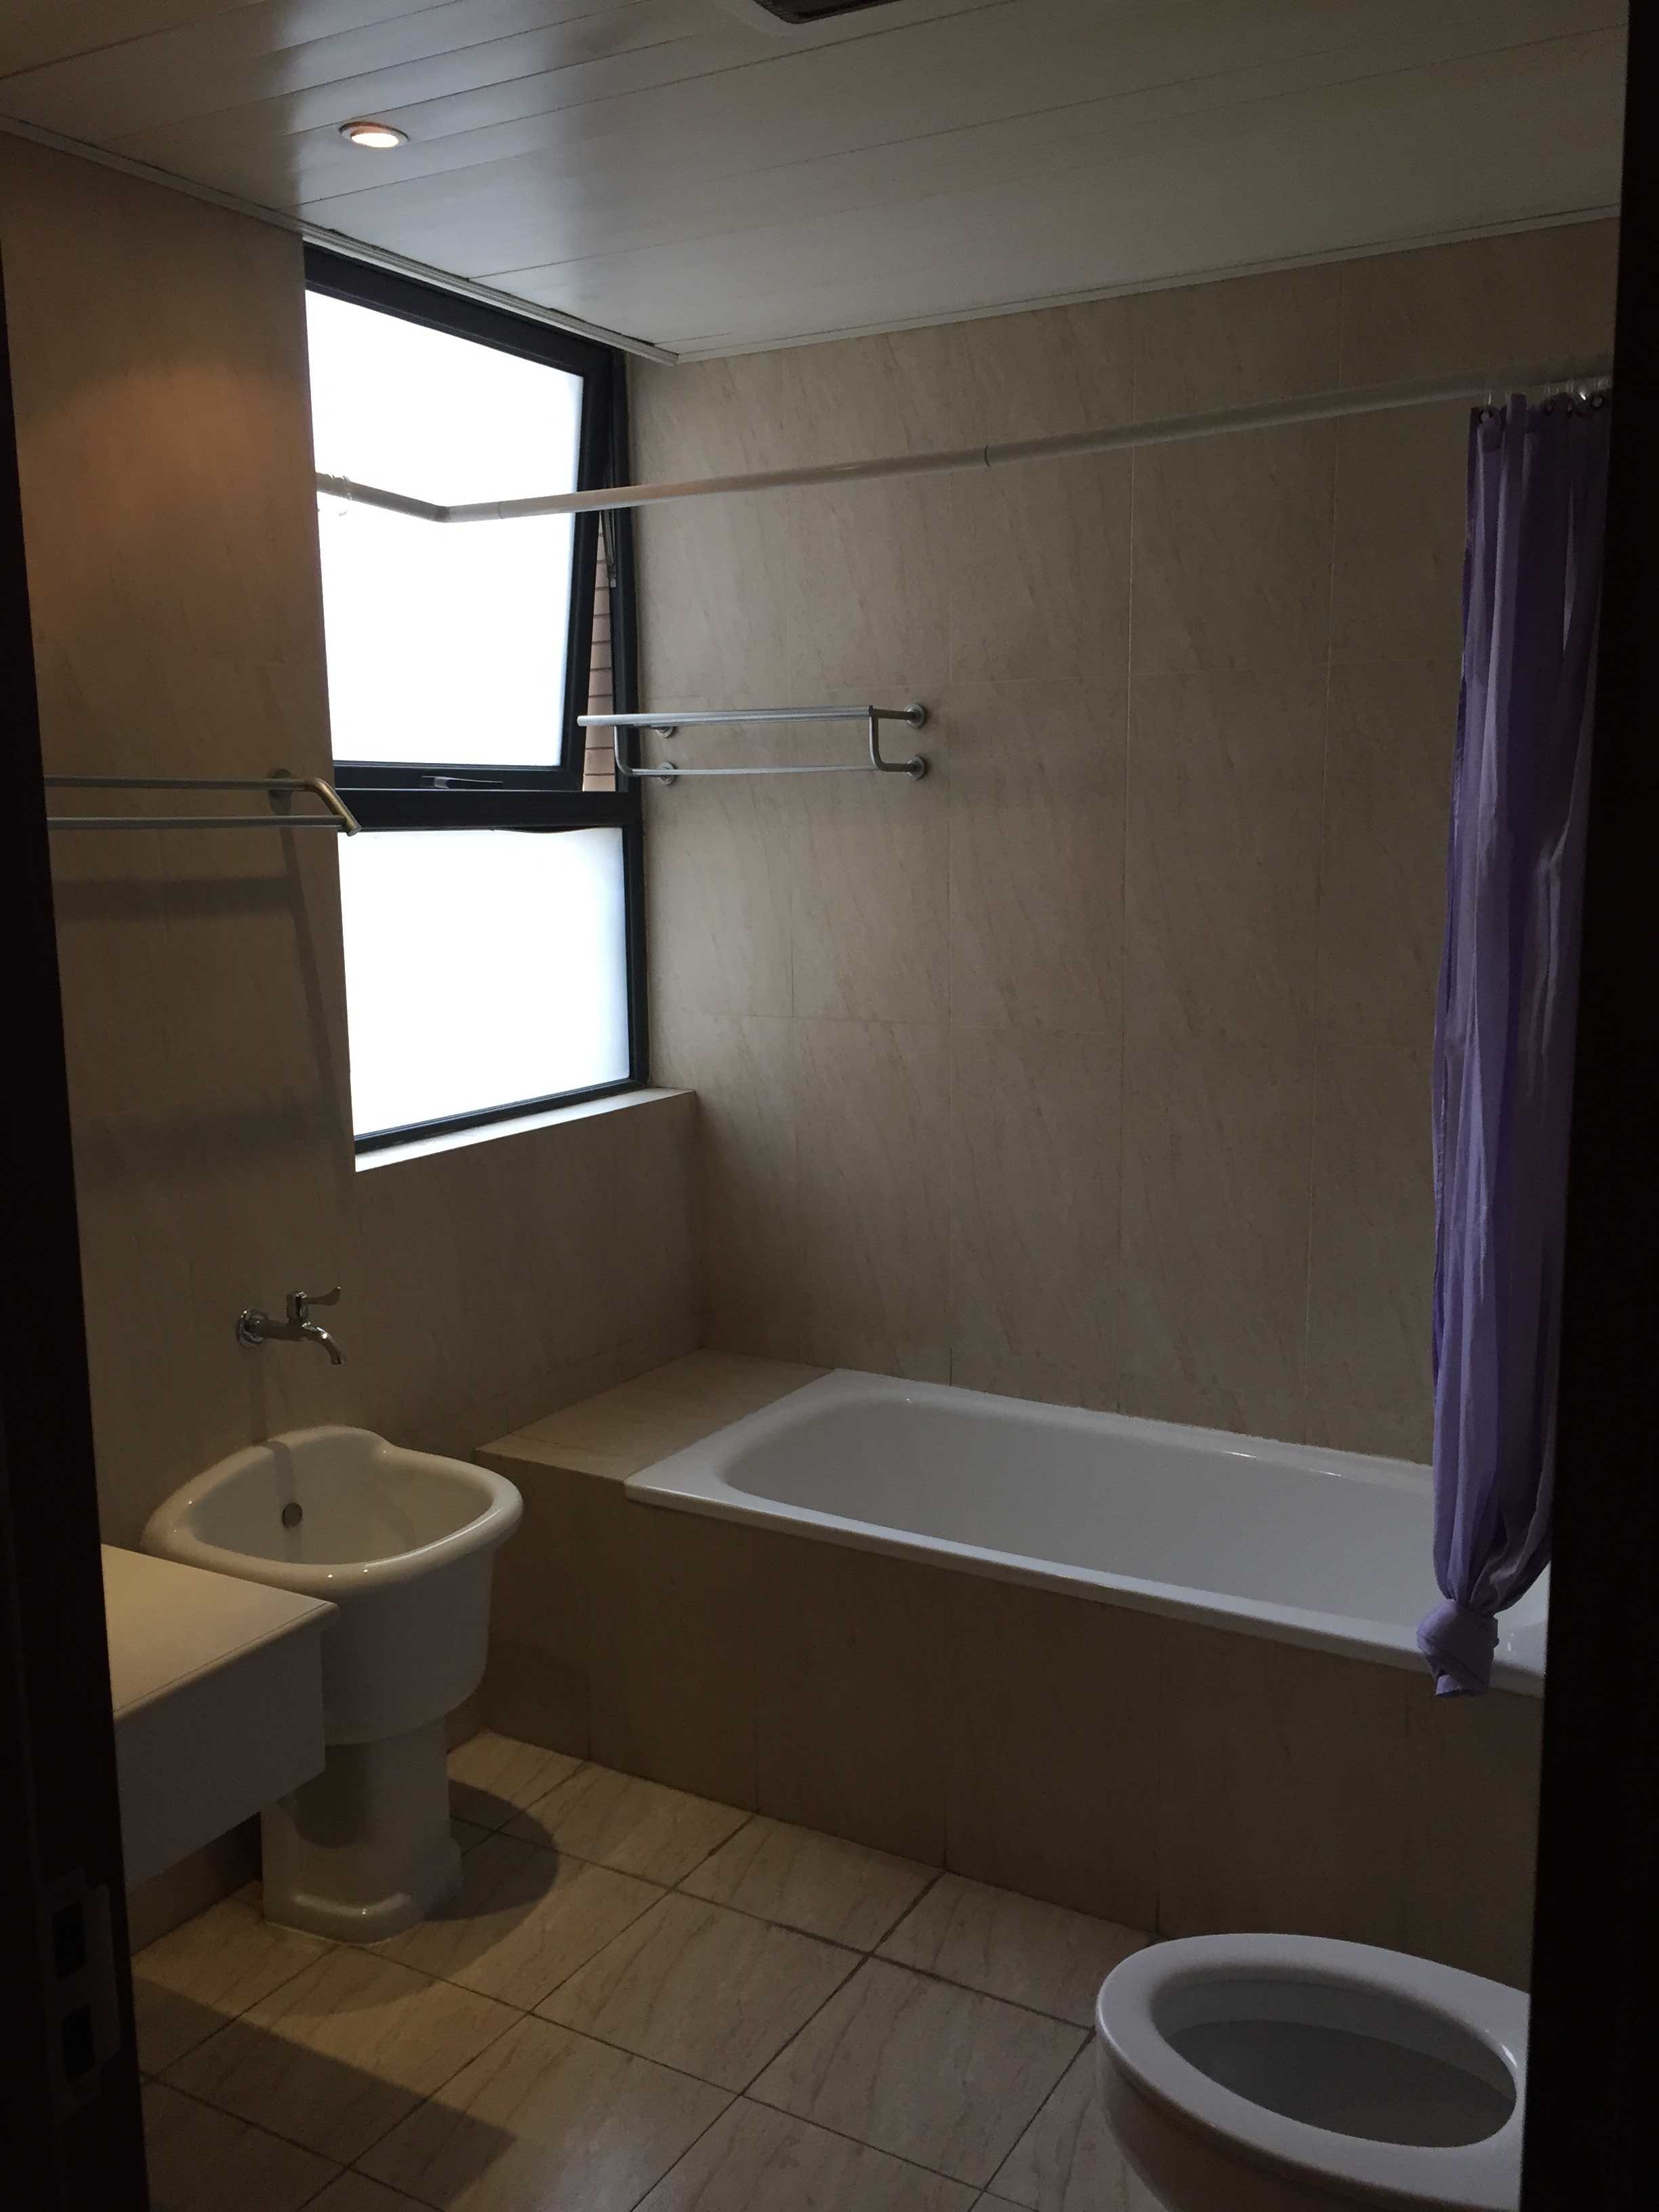 clean bathroom Good Price, Bright Spacious Apartment for Rent near Shanghai Zoo